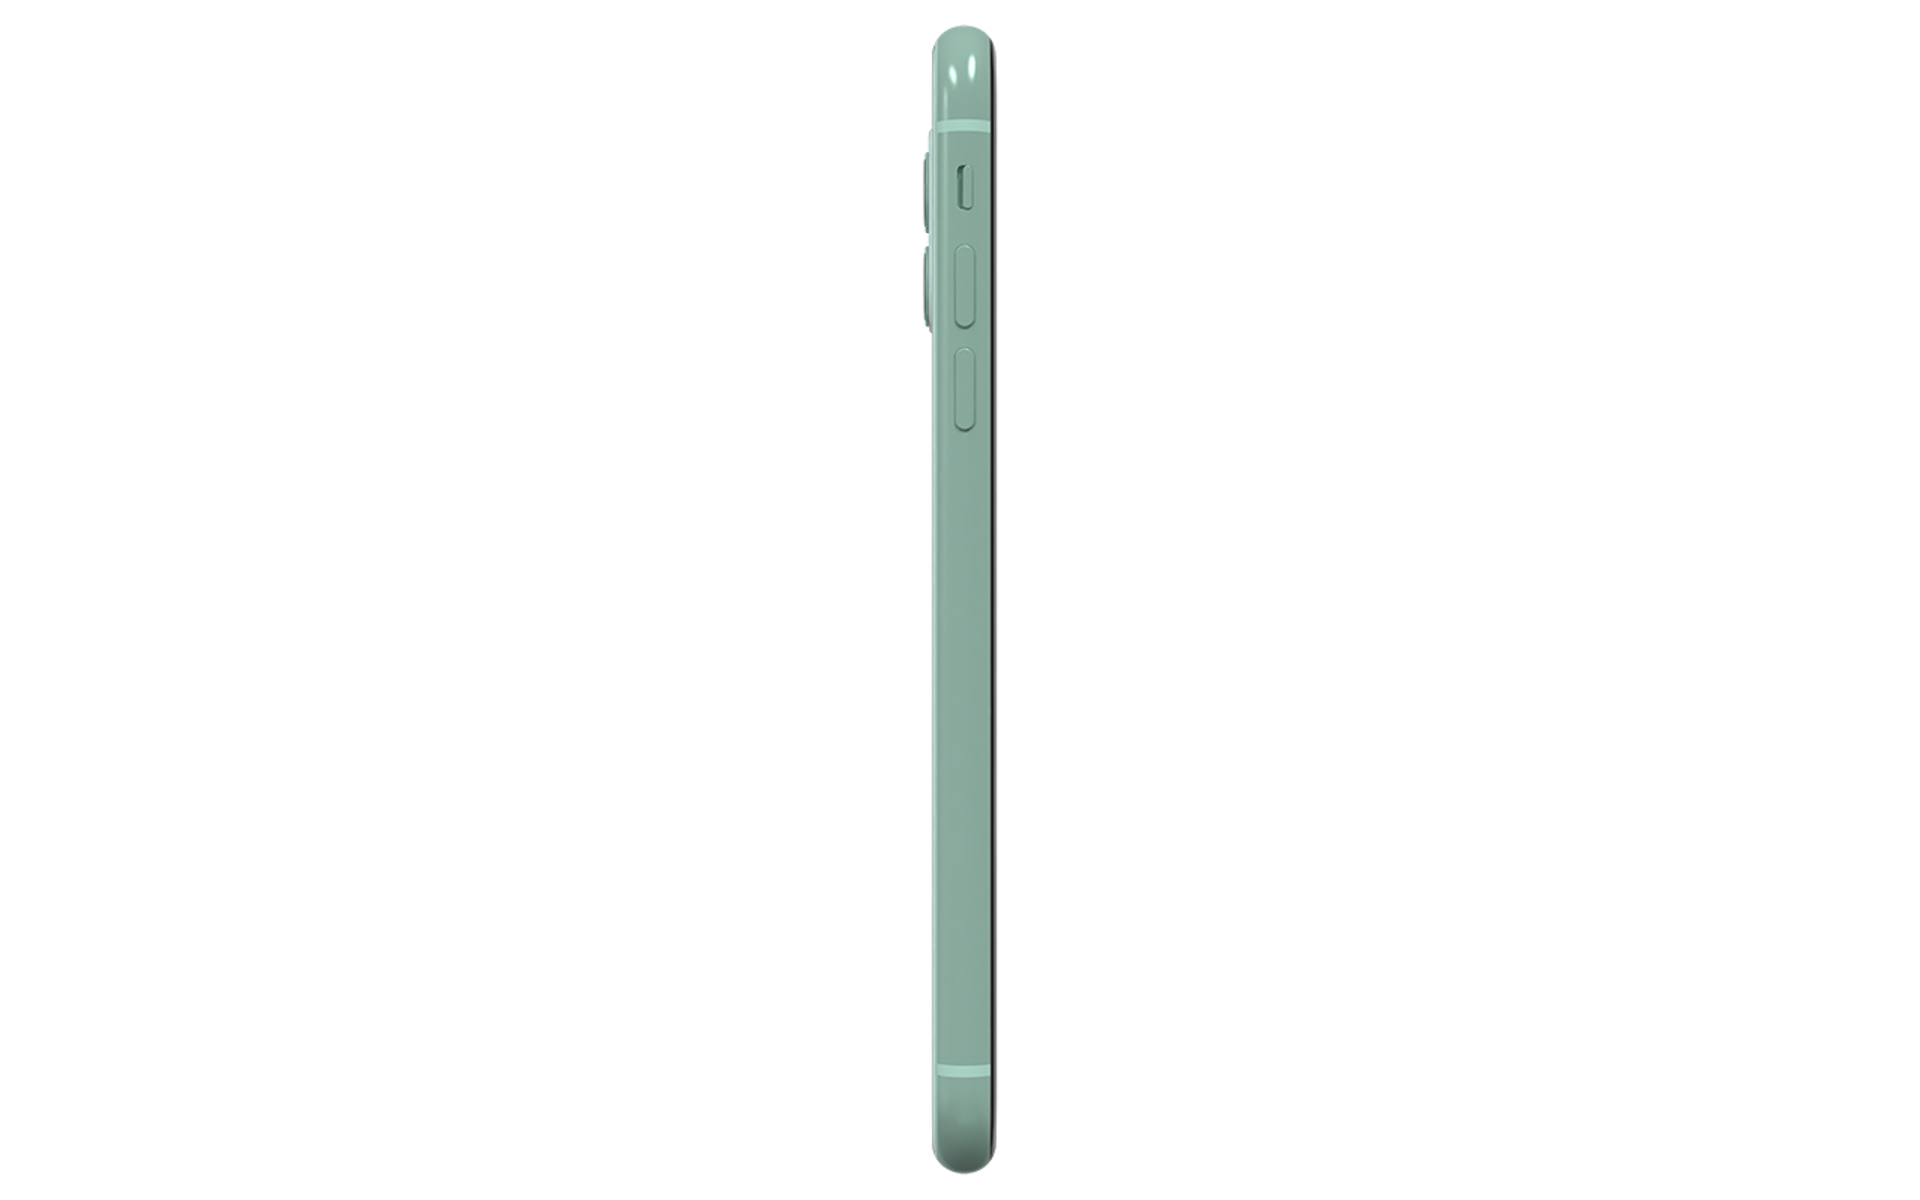 iPhone Dual 64 APPLE 11 REFURBISHED(*) SIM GB Green